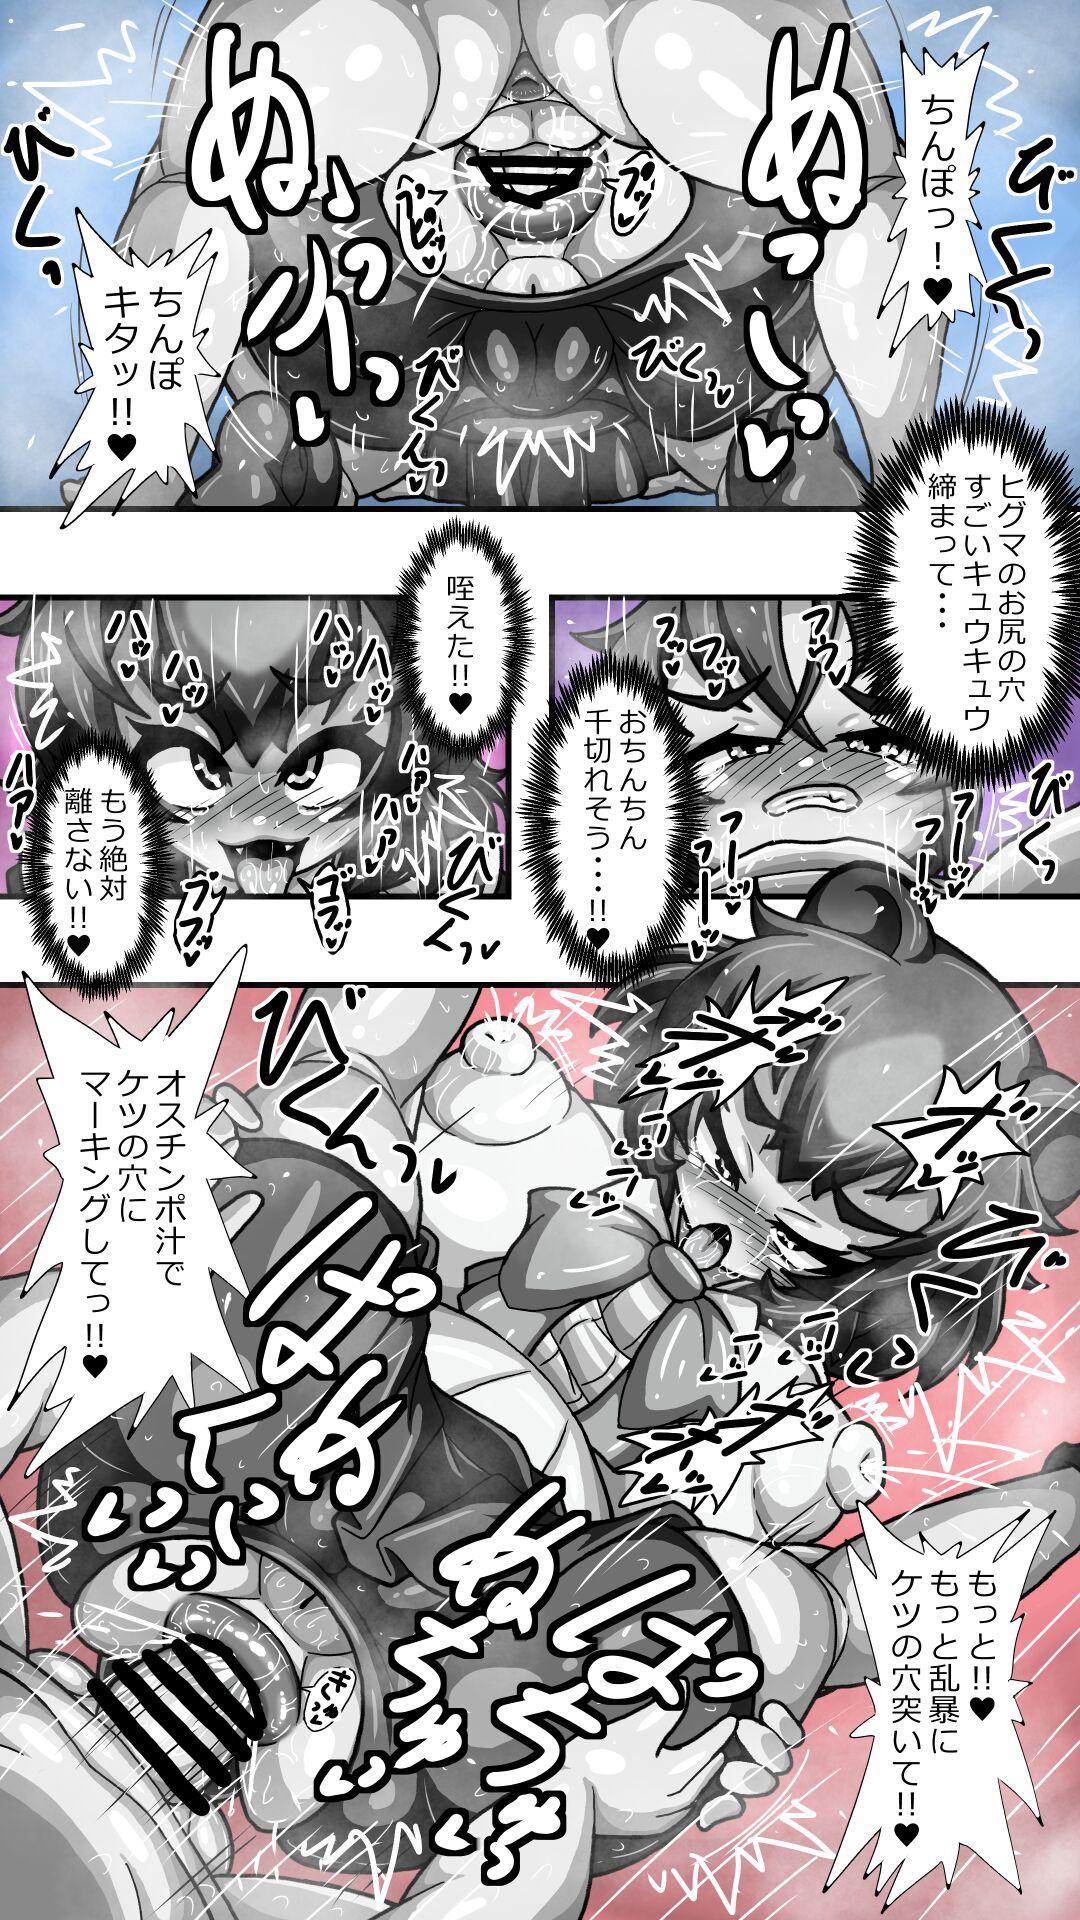 【再掲】ヒグママとショタ隊長のアナルえっち16P漫画収集版 13